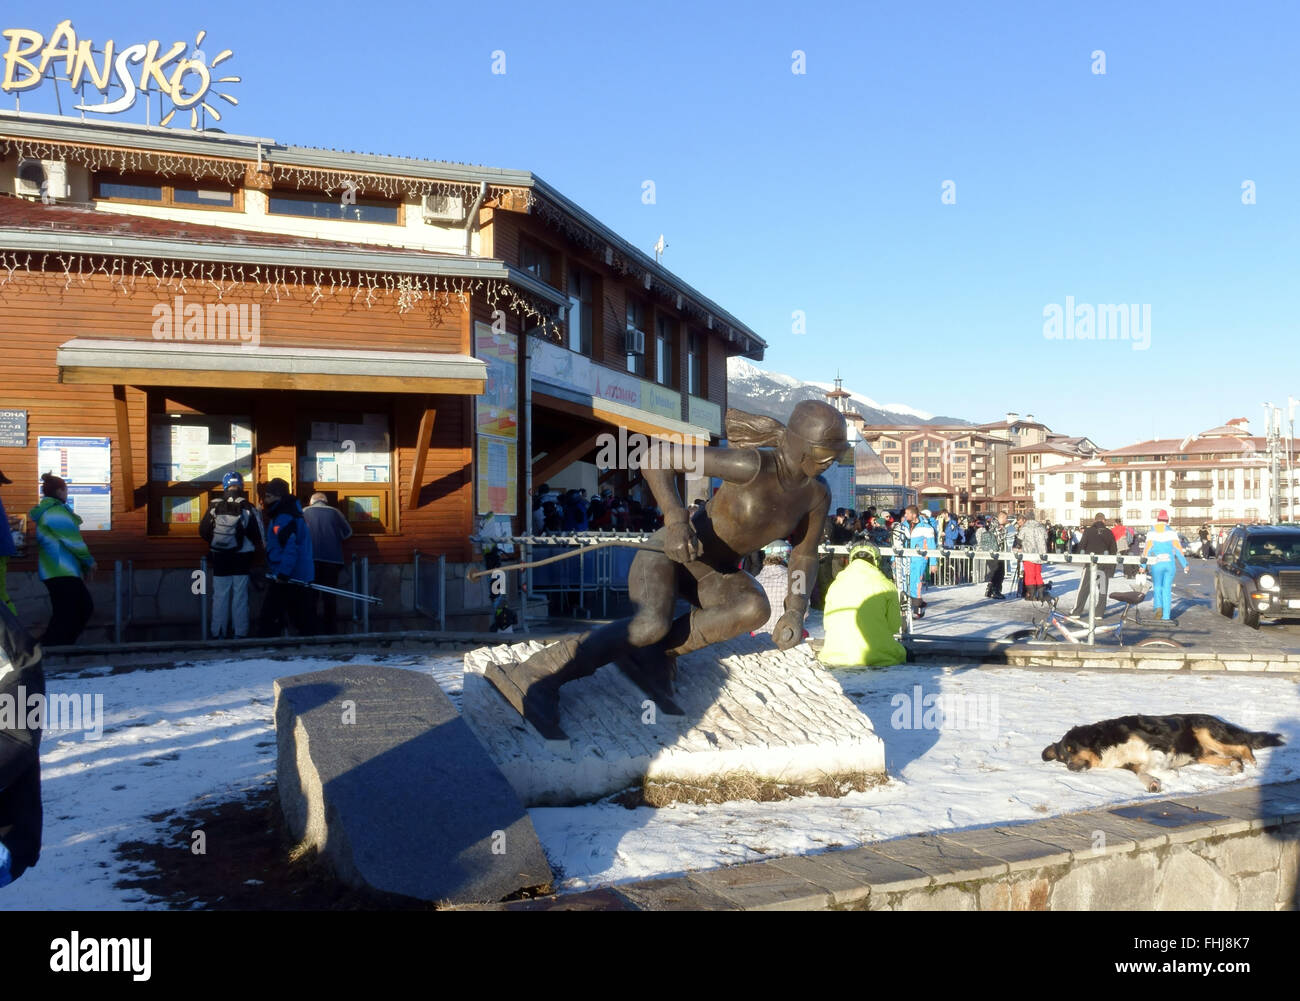 Am frühen Morgen an der Unterseite des Skilifts Bansko Bulgarien Stockfoto